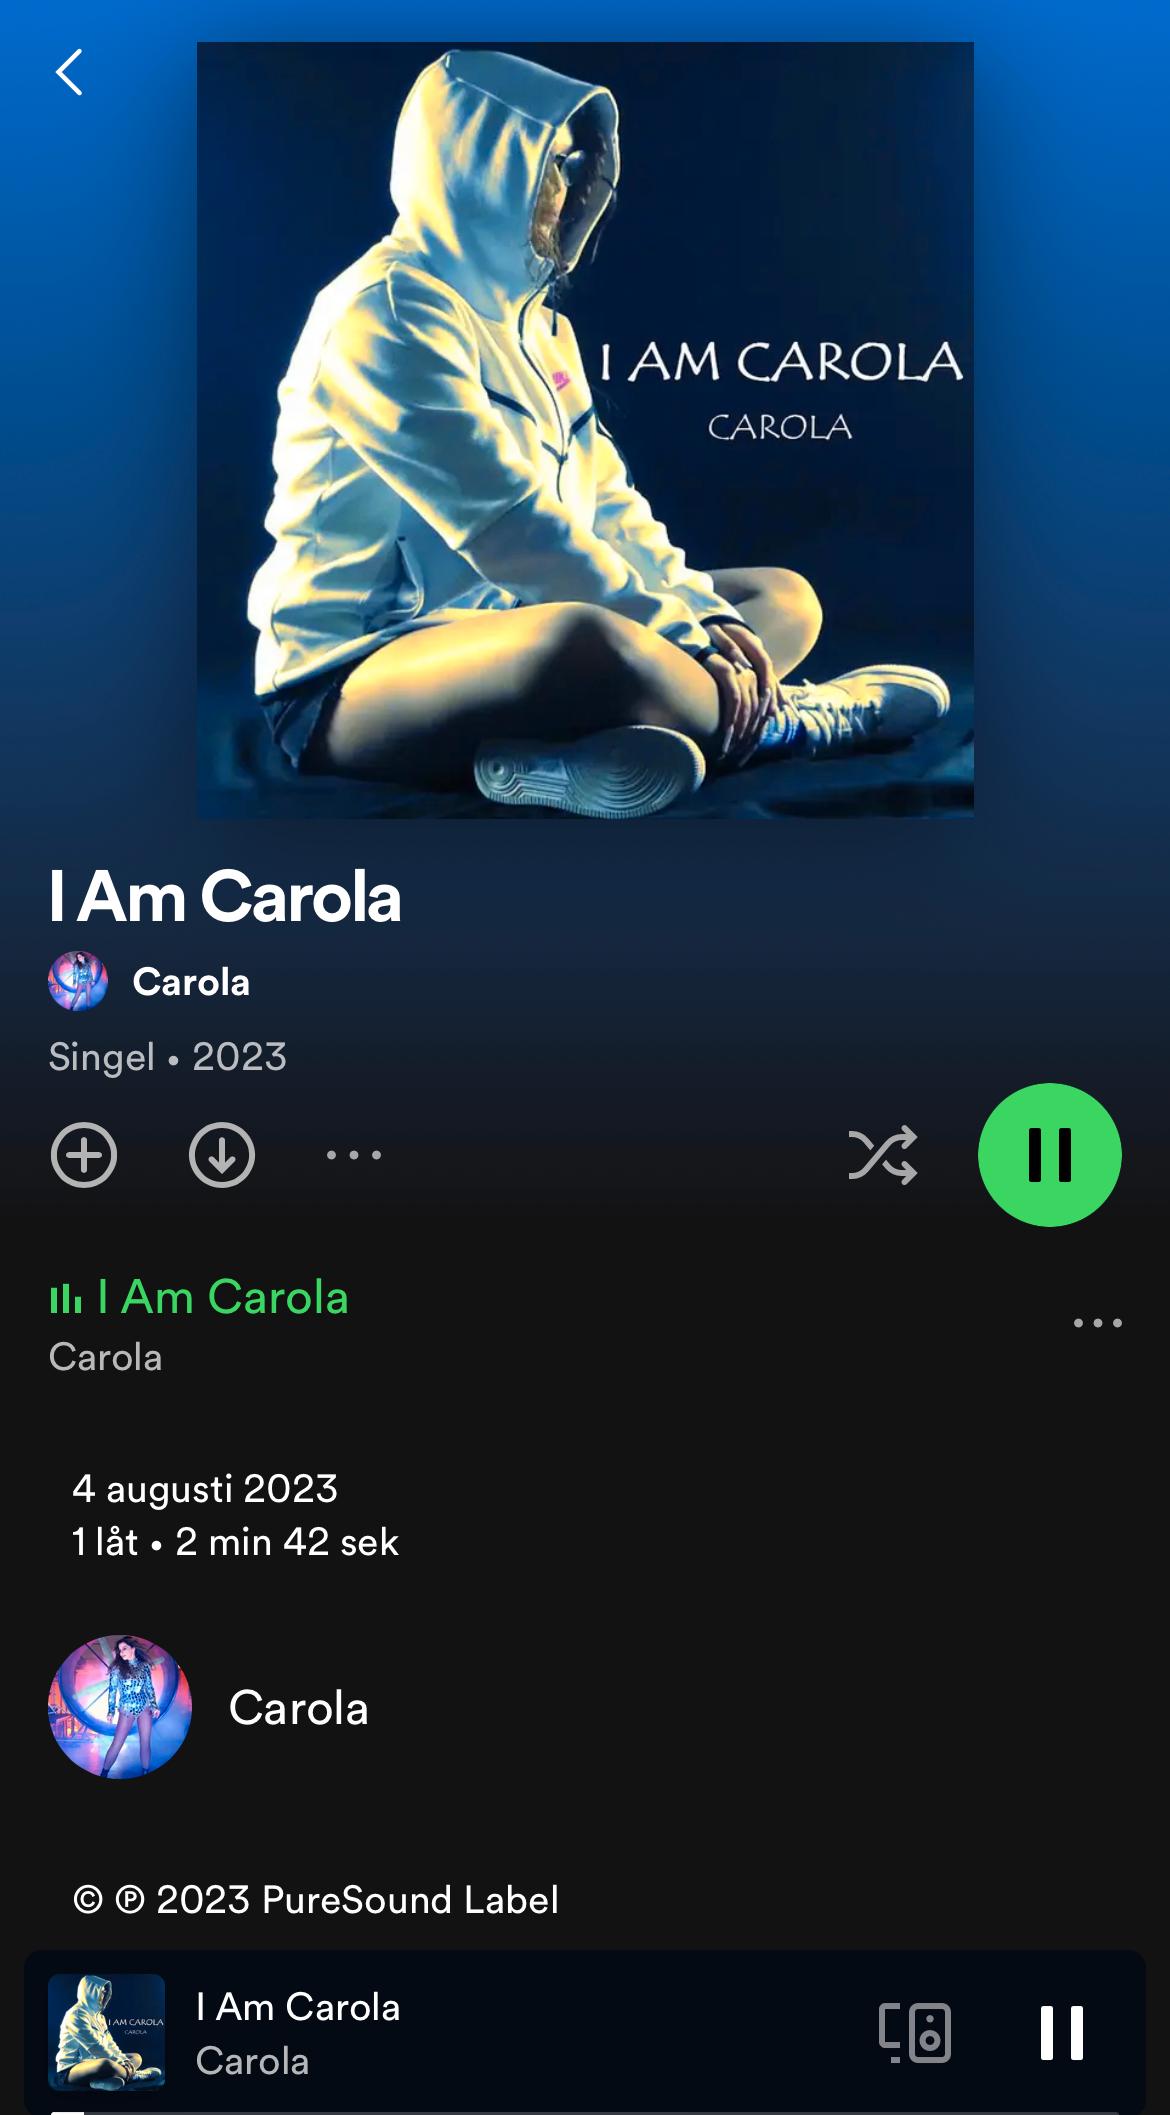 Låten ”I Am Carola” av den italienska sångerskan Carola – som inte har något med svenska Carola att göra. 